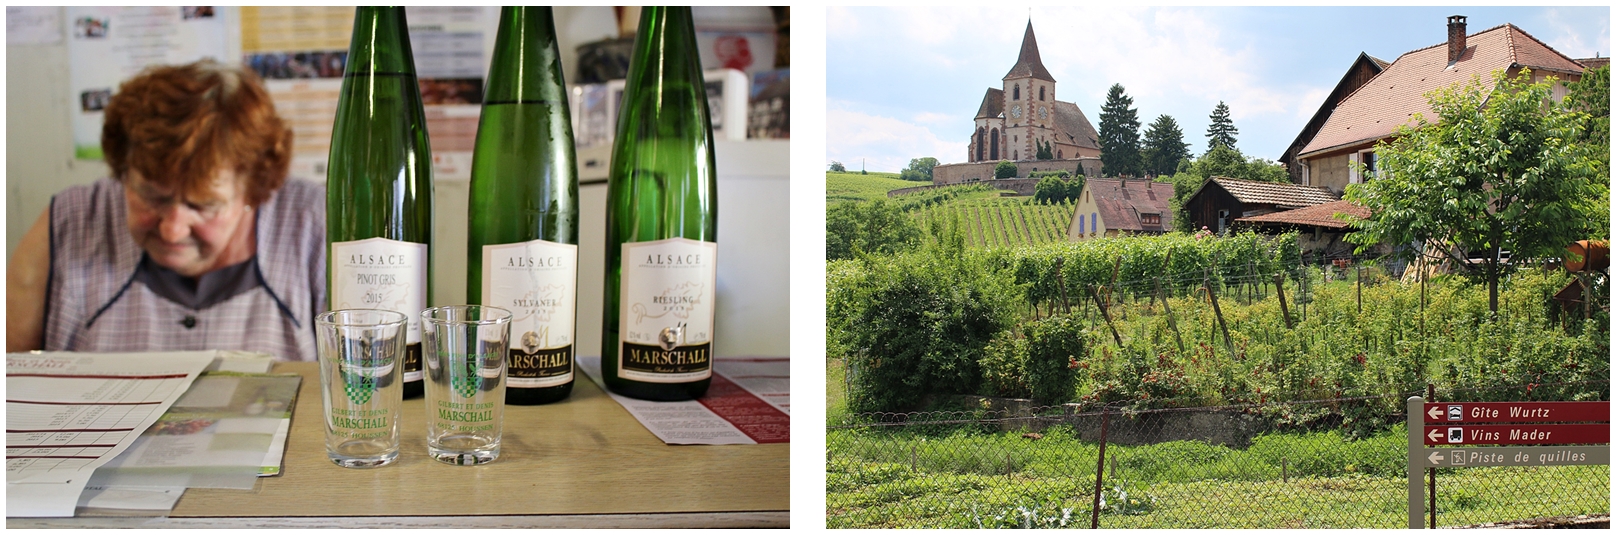 Besöker vingårdar i vackra Alsace i Frankrike